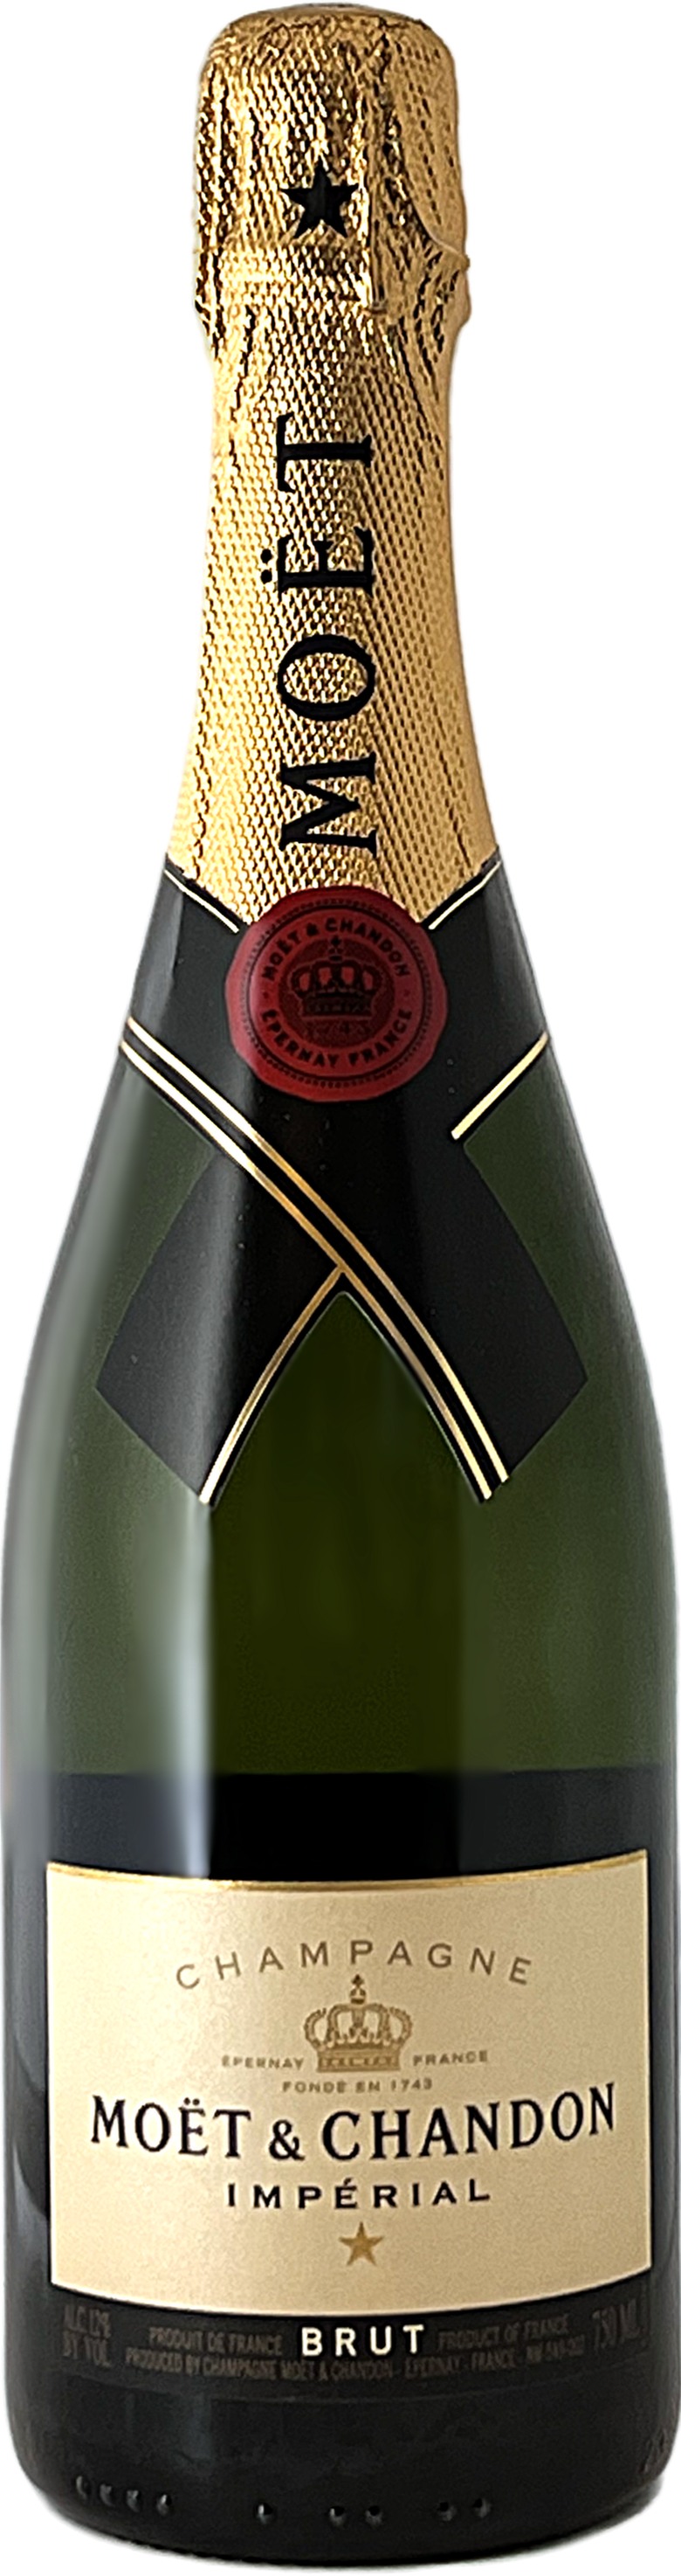 Moet & Chandon Imperial Brut Champagne - BottleBargains